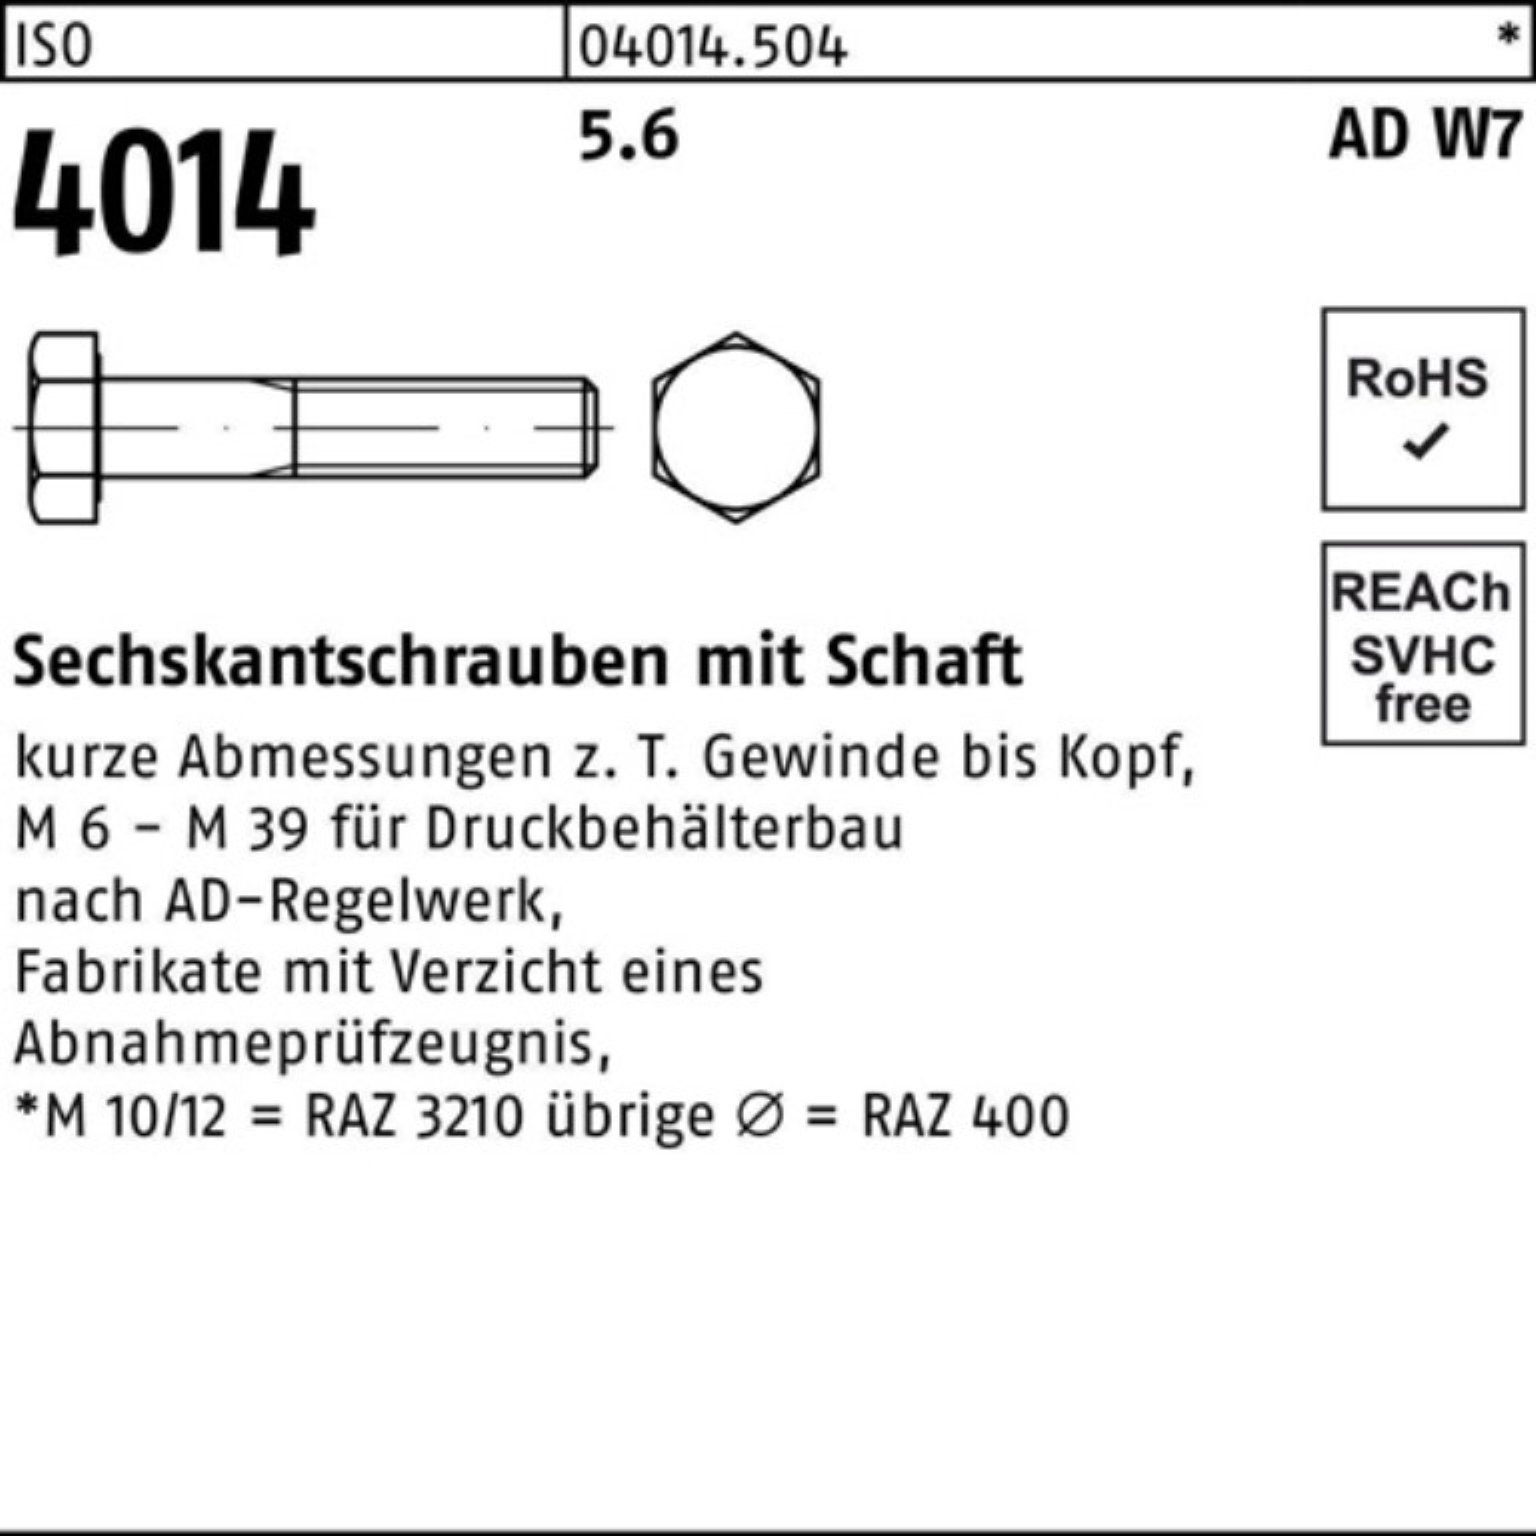 Bufab Sechskantschraube M16x W7 Schaft ISO 4014 Sechskantschraube 100er 5.6 120 Pack 25 Stück